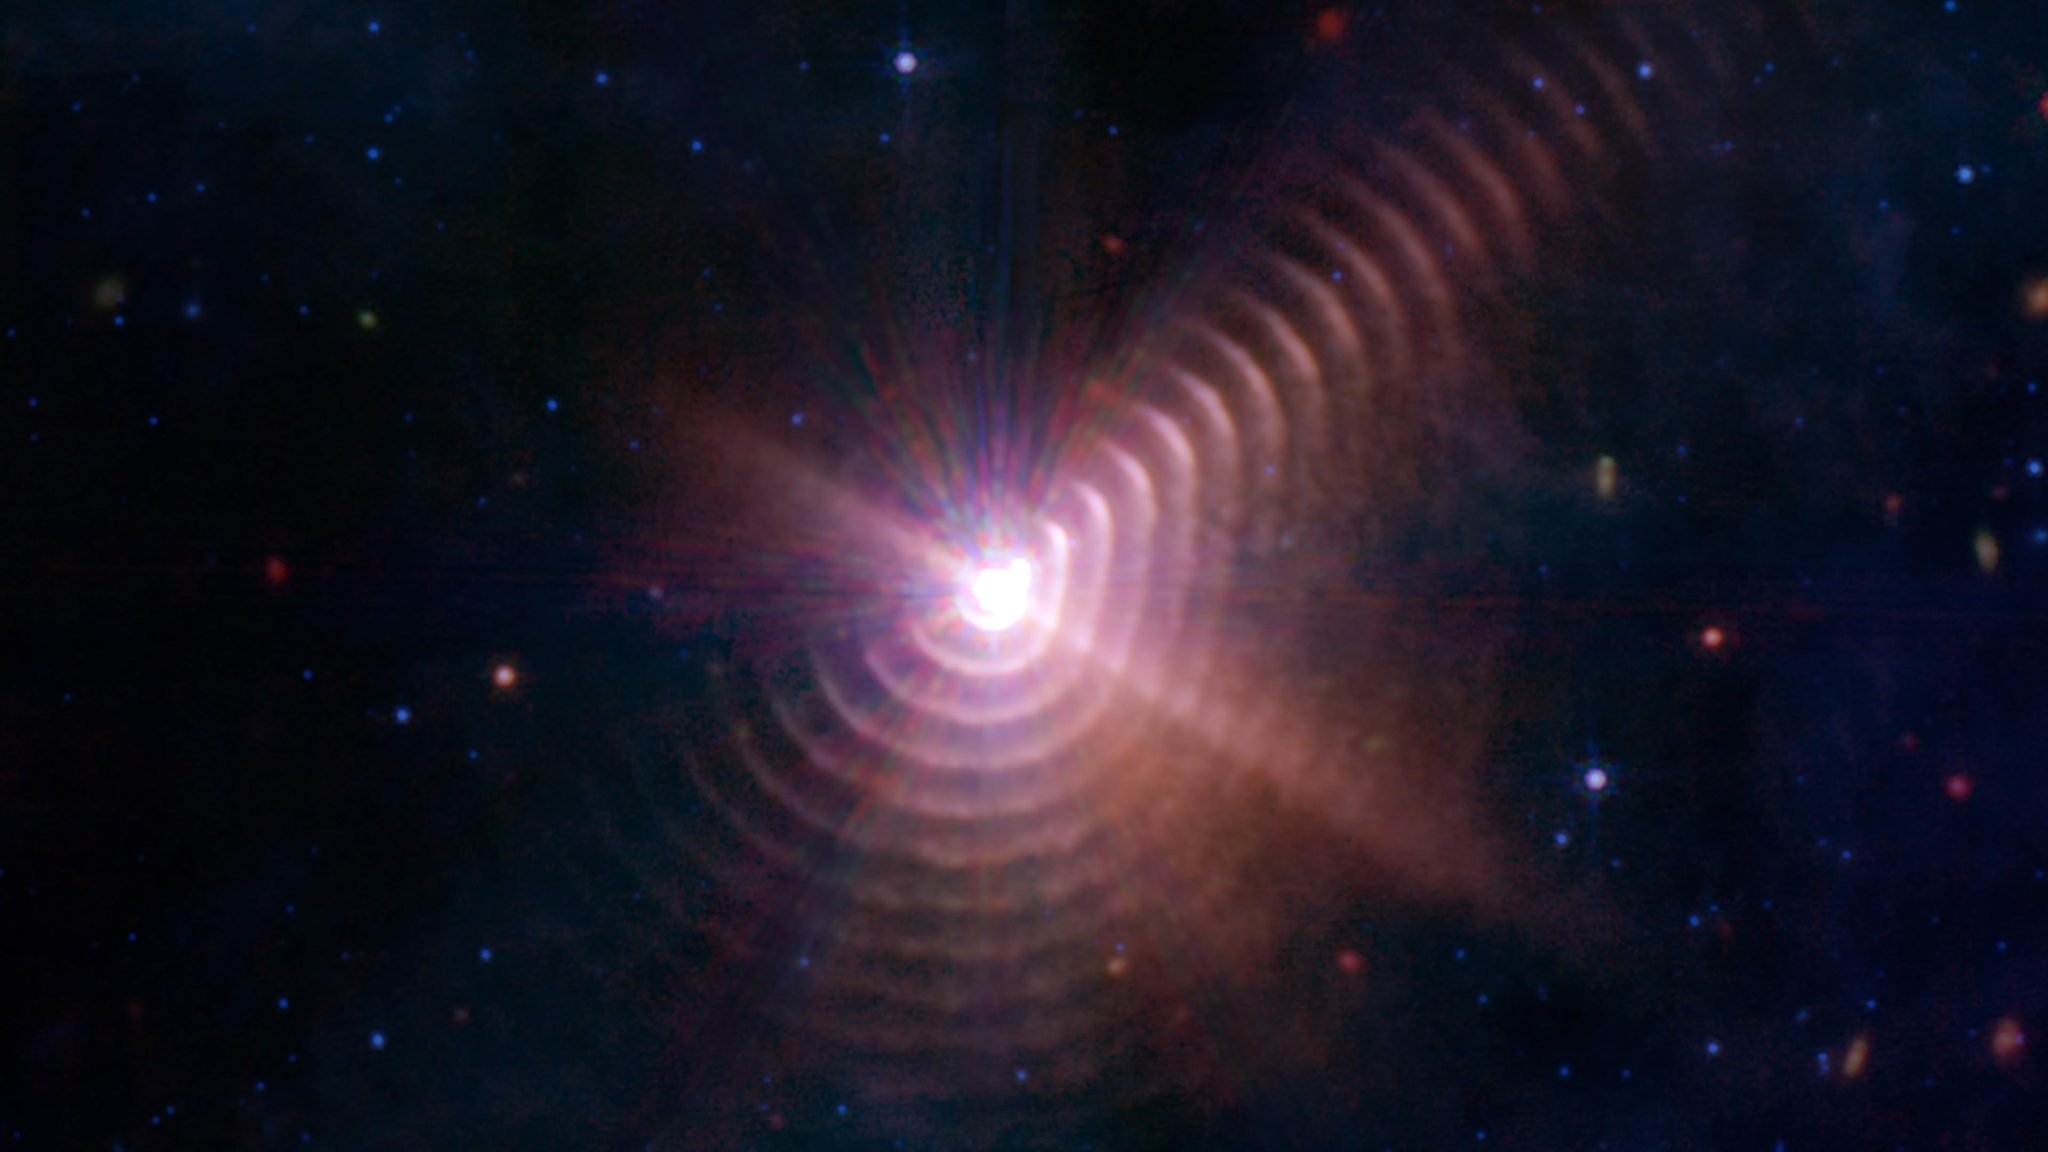 Telescopio espacial Webb descubre extraña «huella digital» cósmica